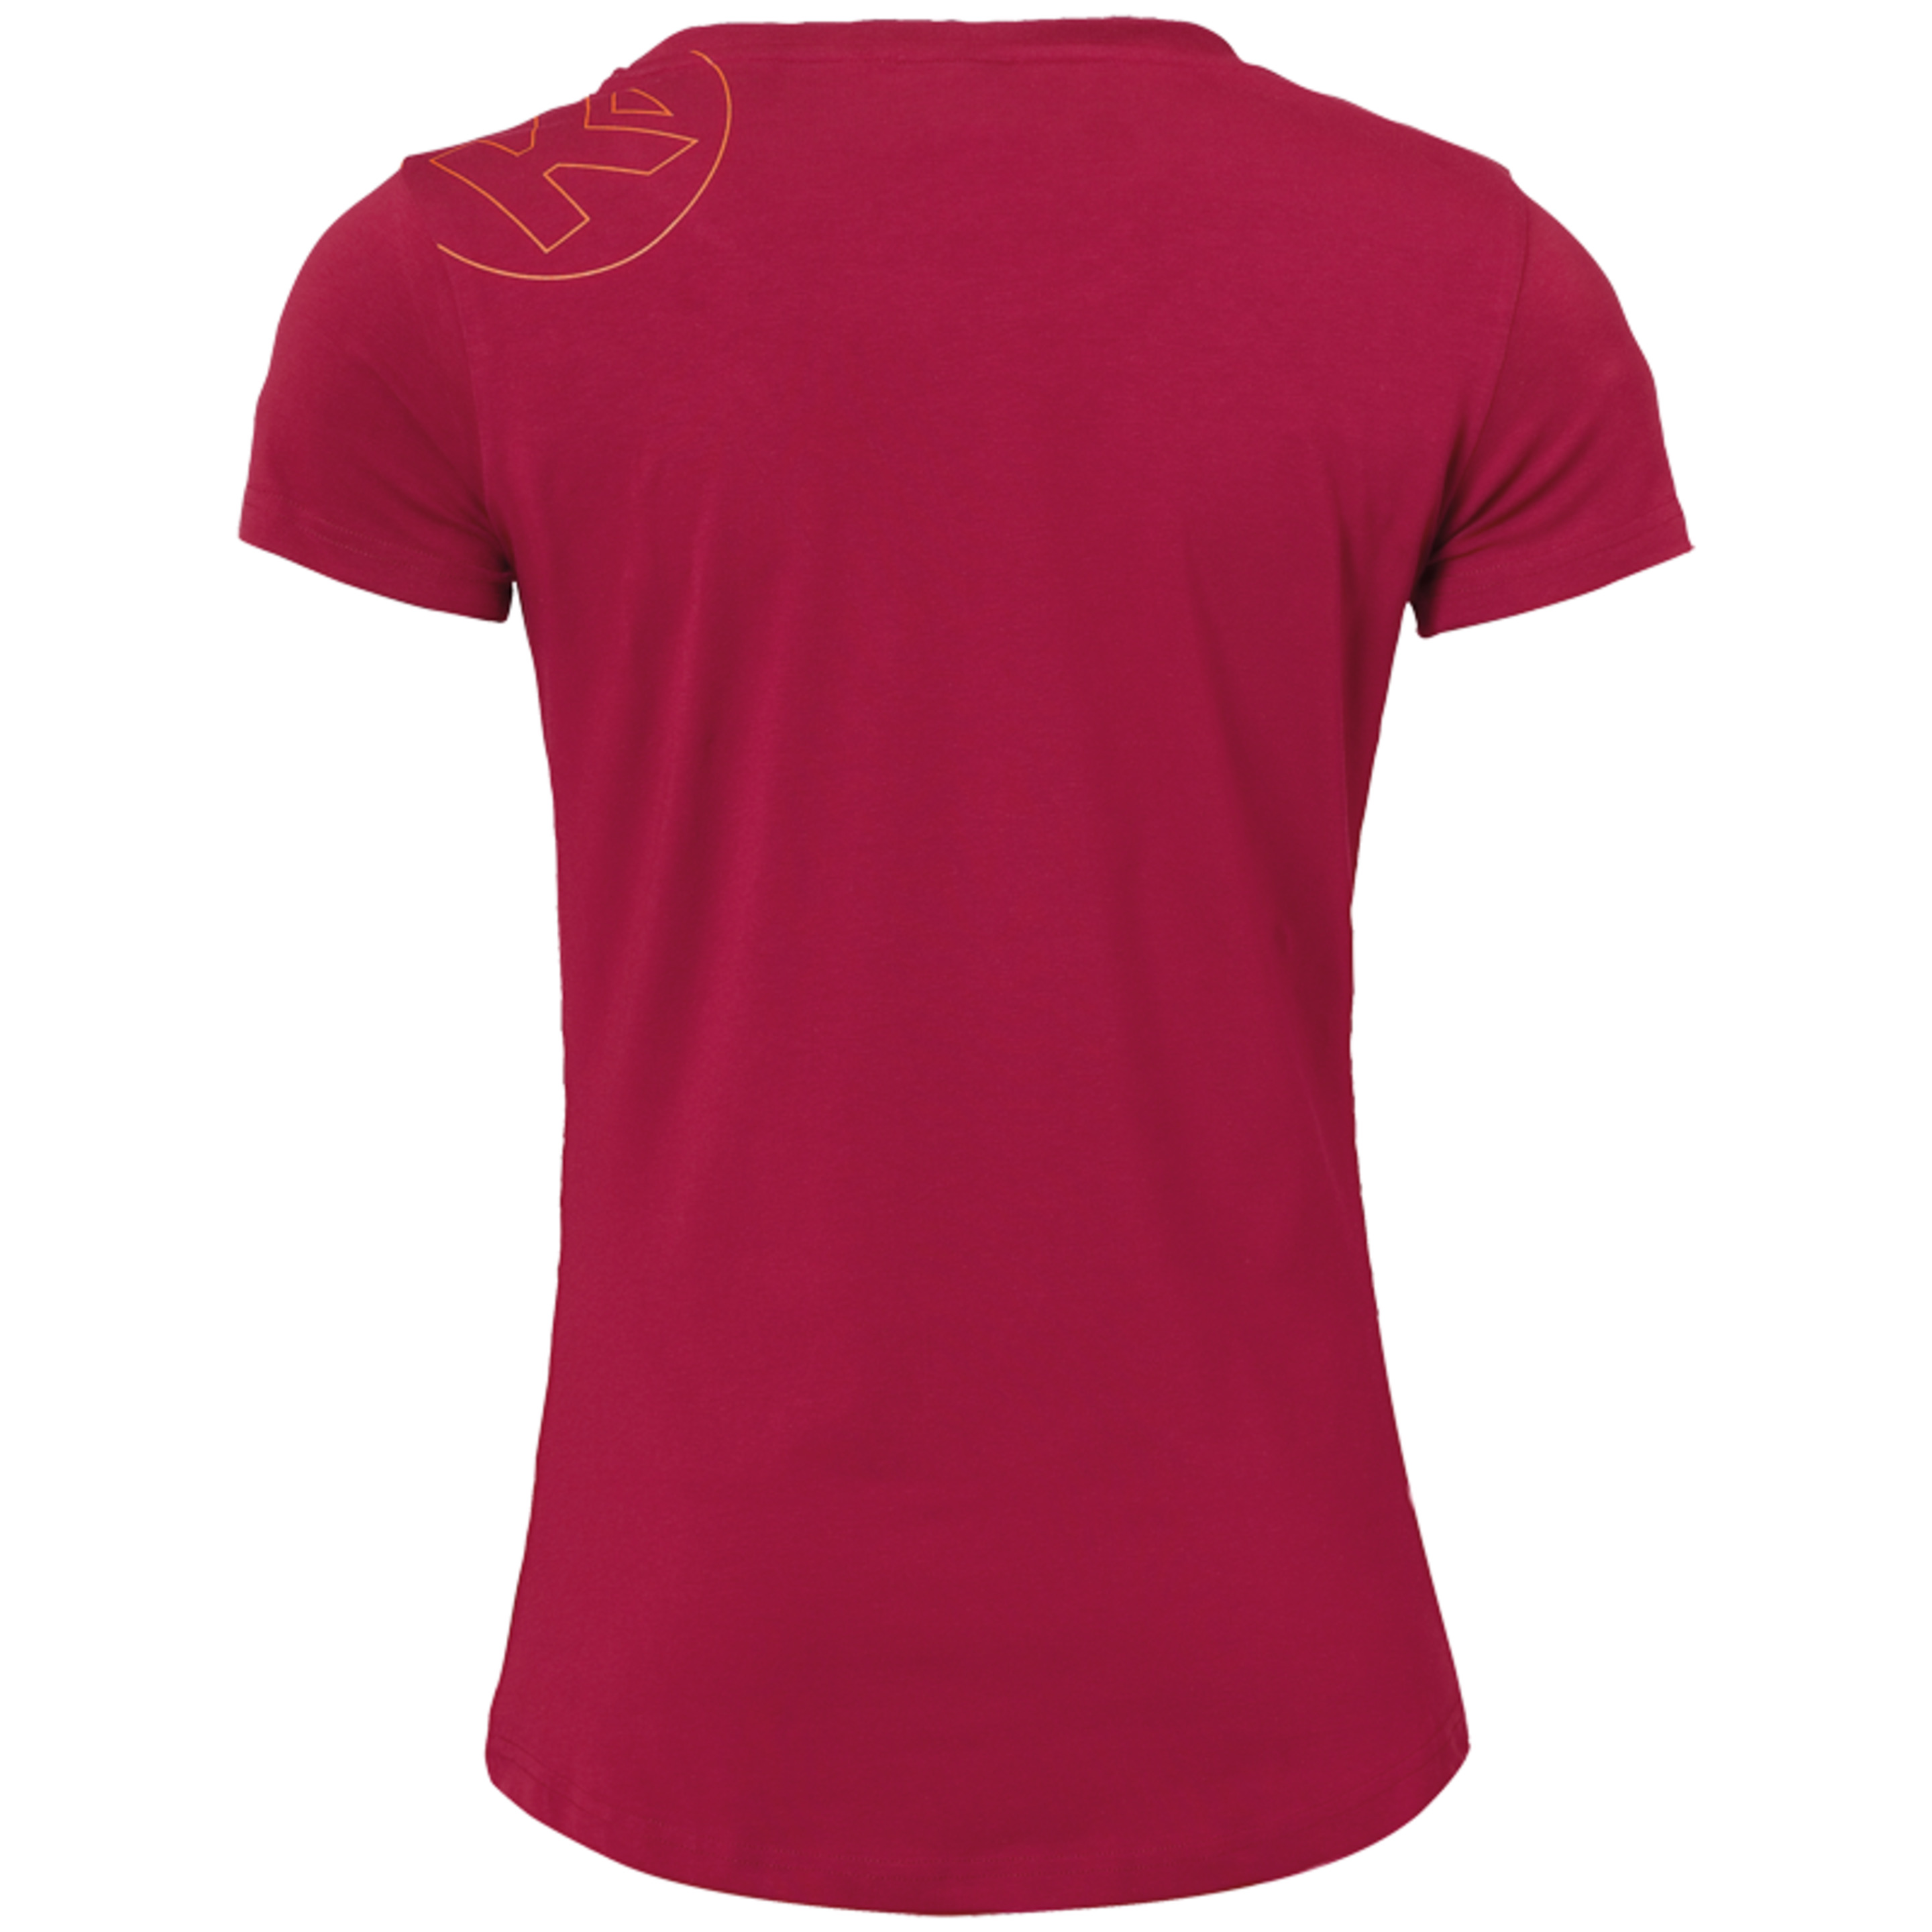 Graphic T-shirt Women Rojo Oscuro Kempa